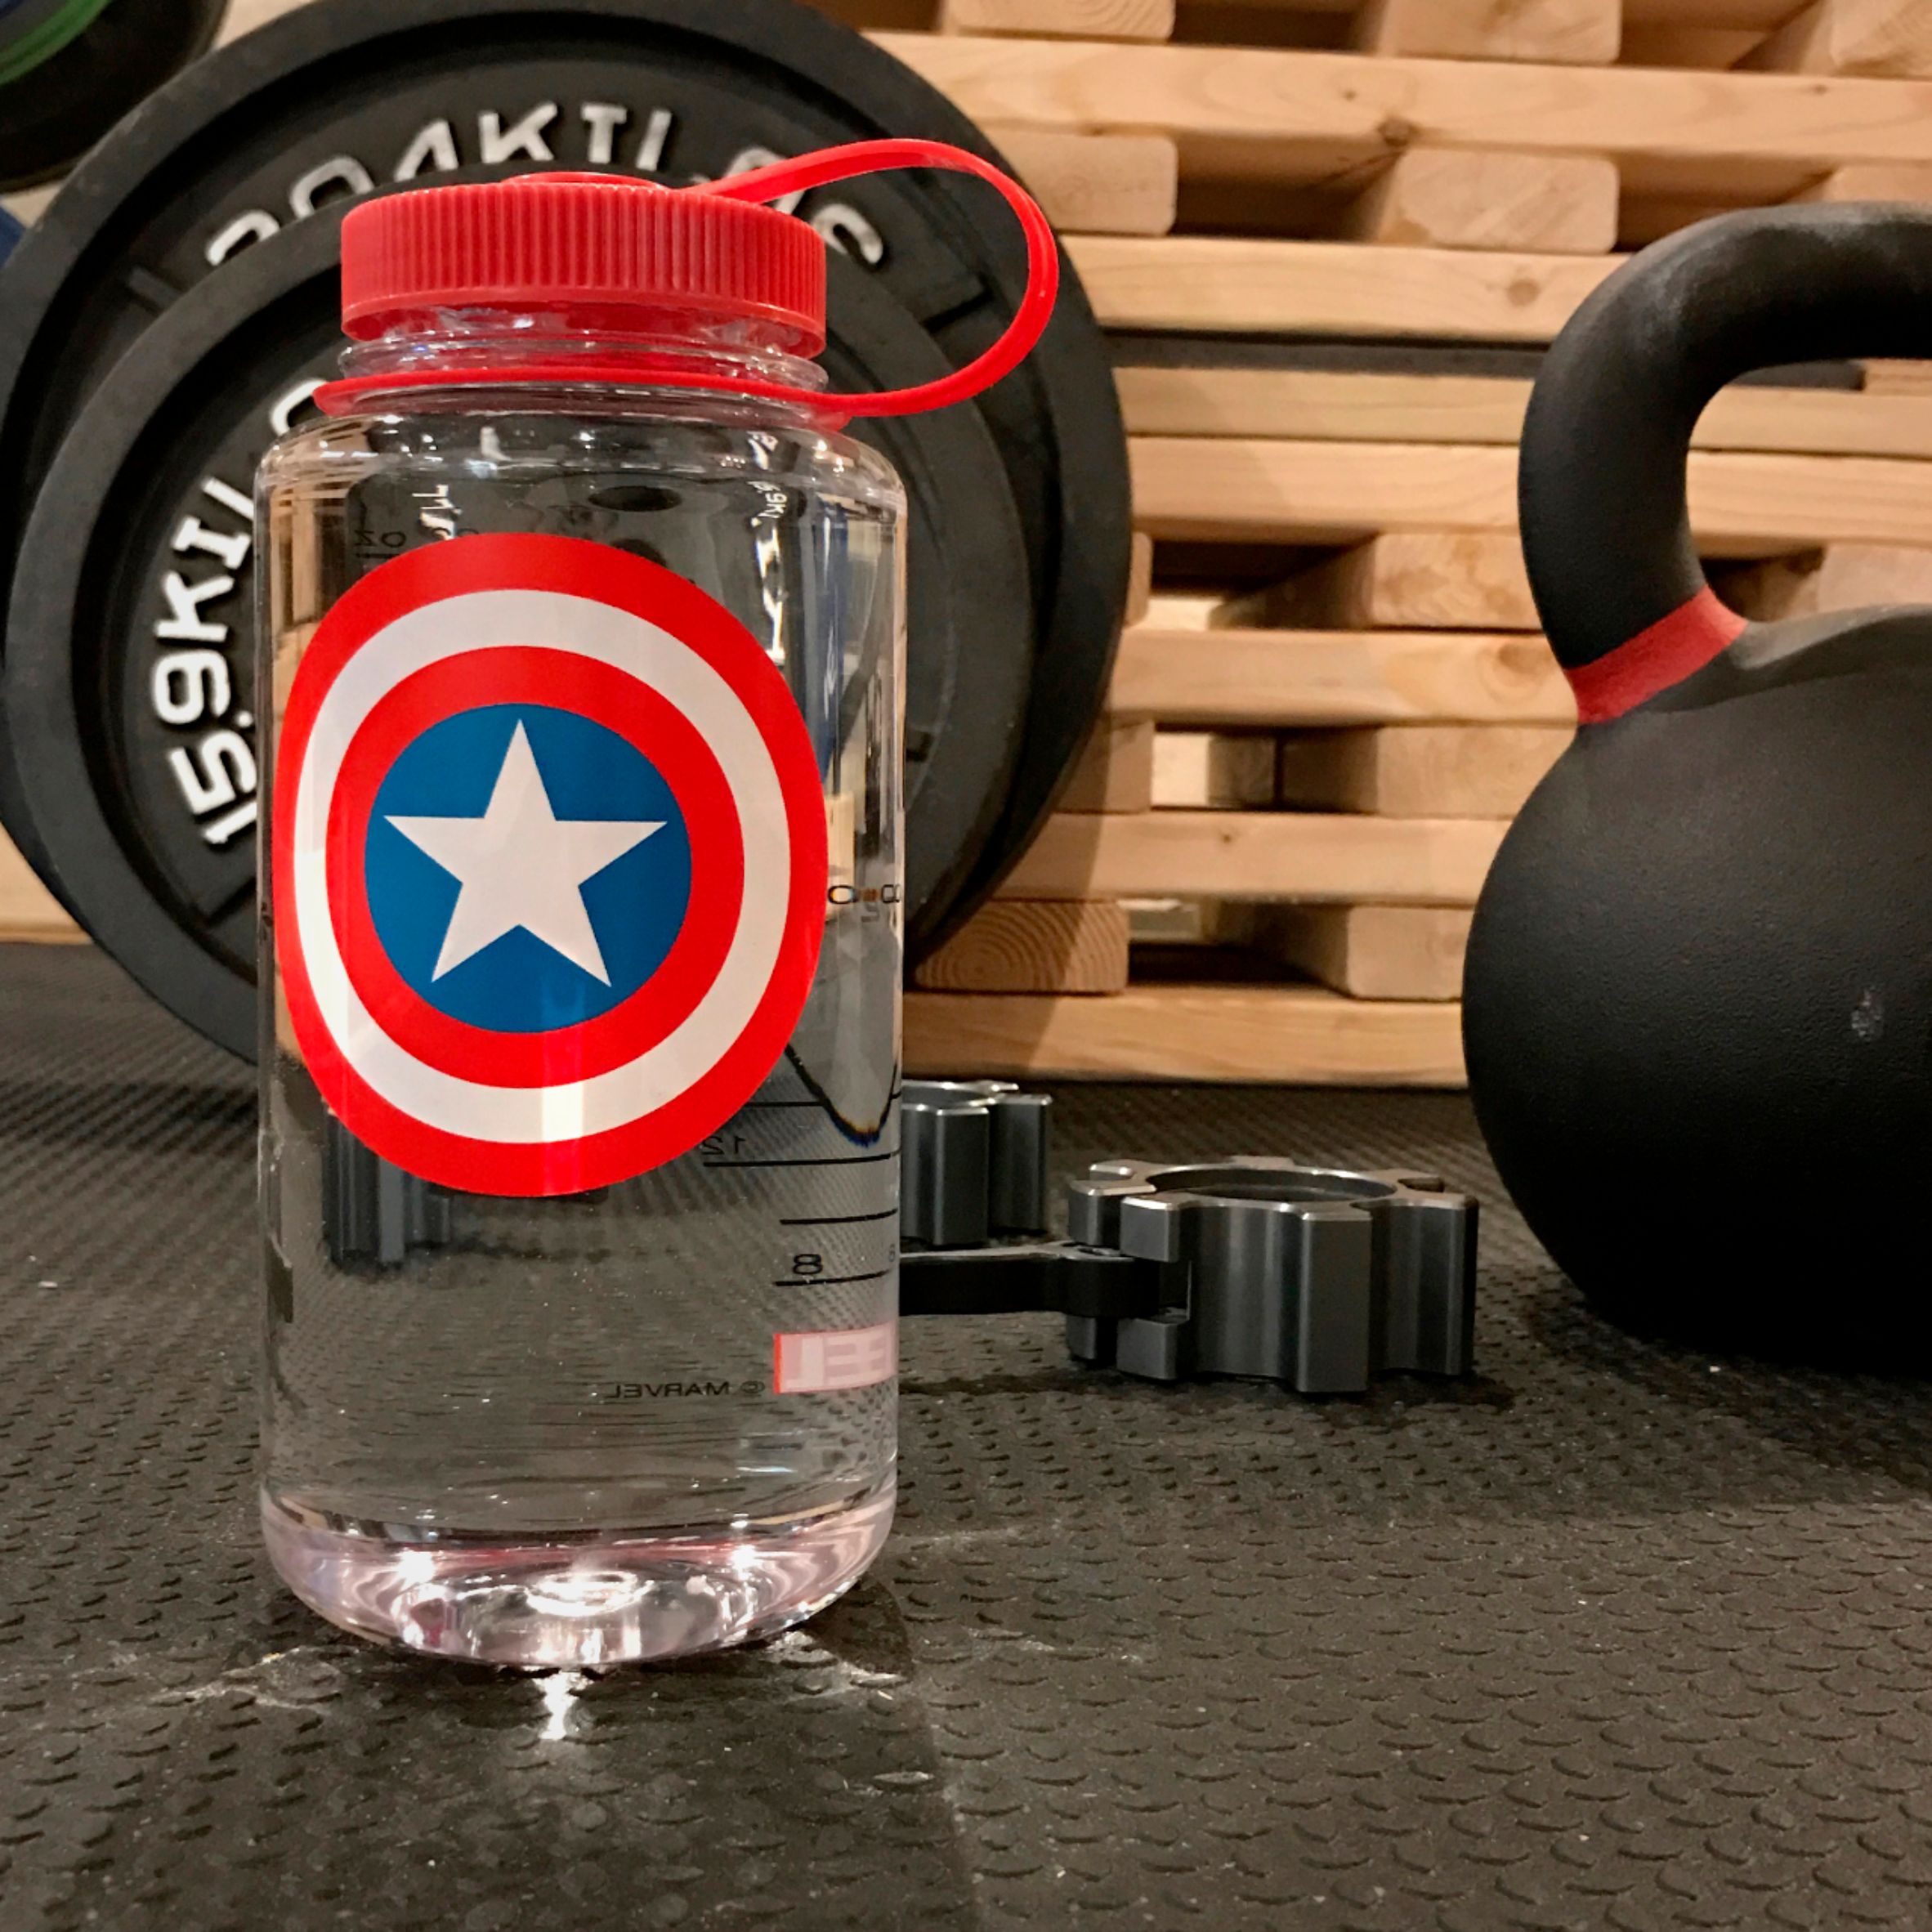 Best Buy: Nalgene Marvel Captain America 32-Oz. Water Bottle Clear